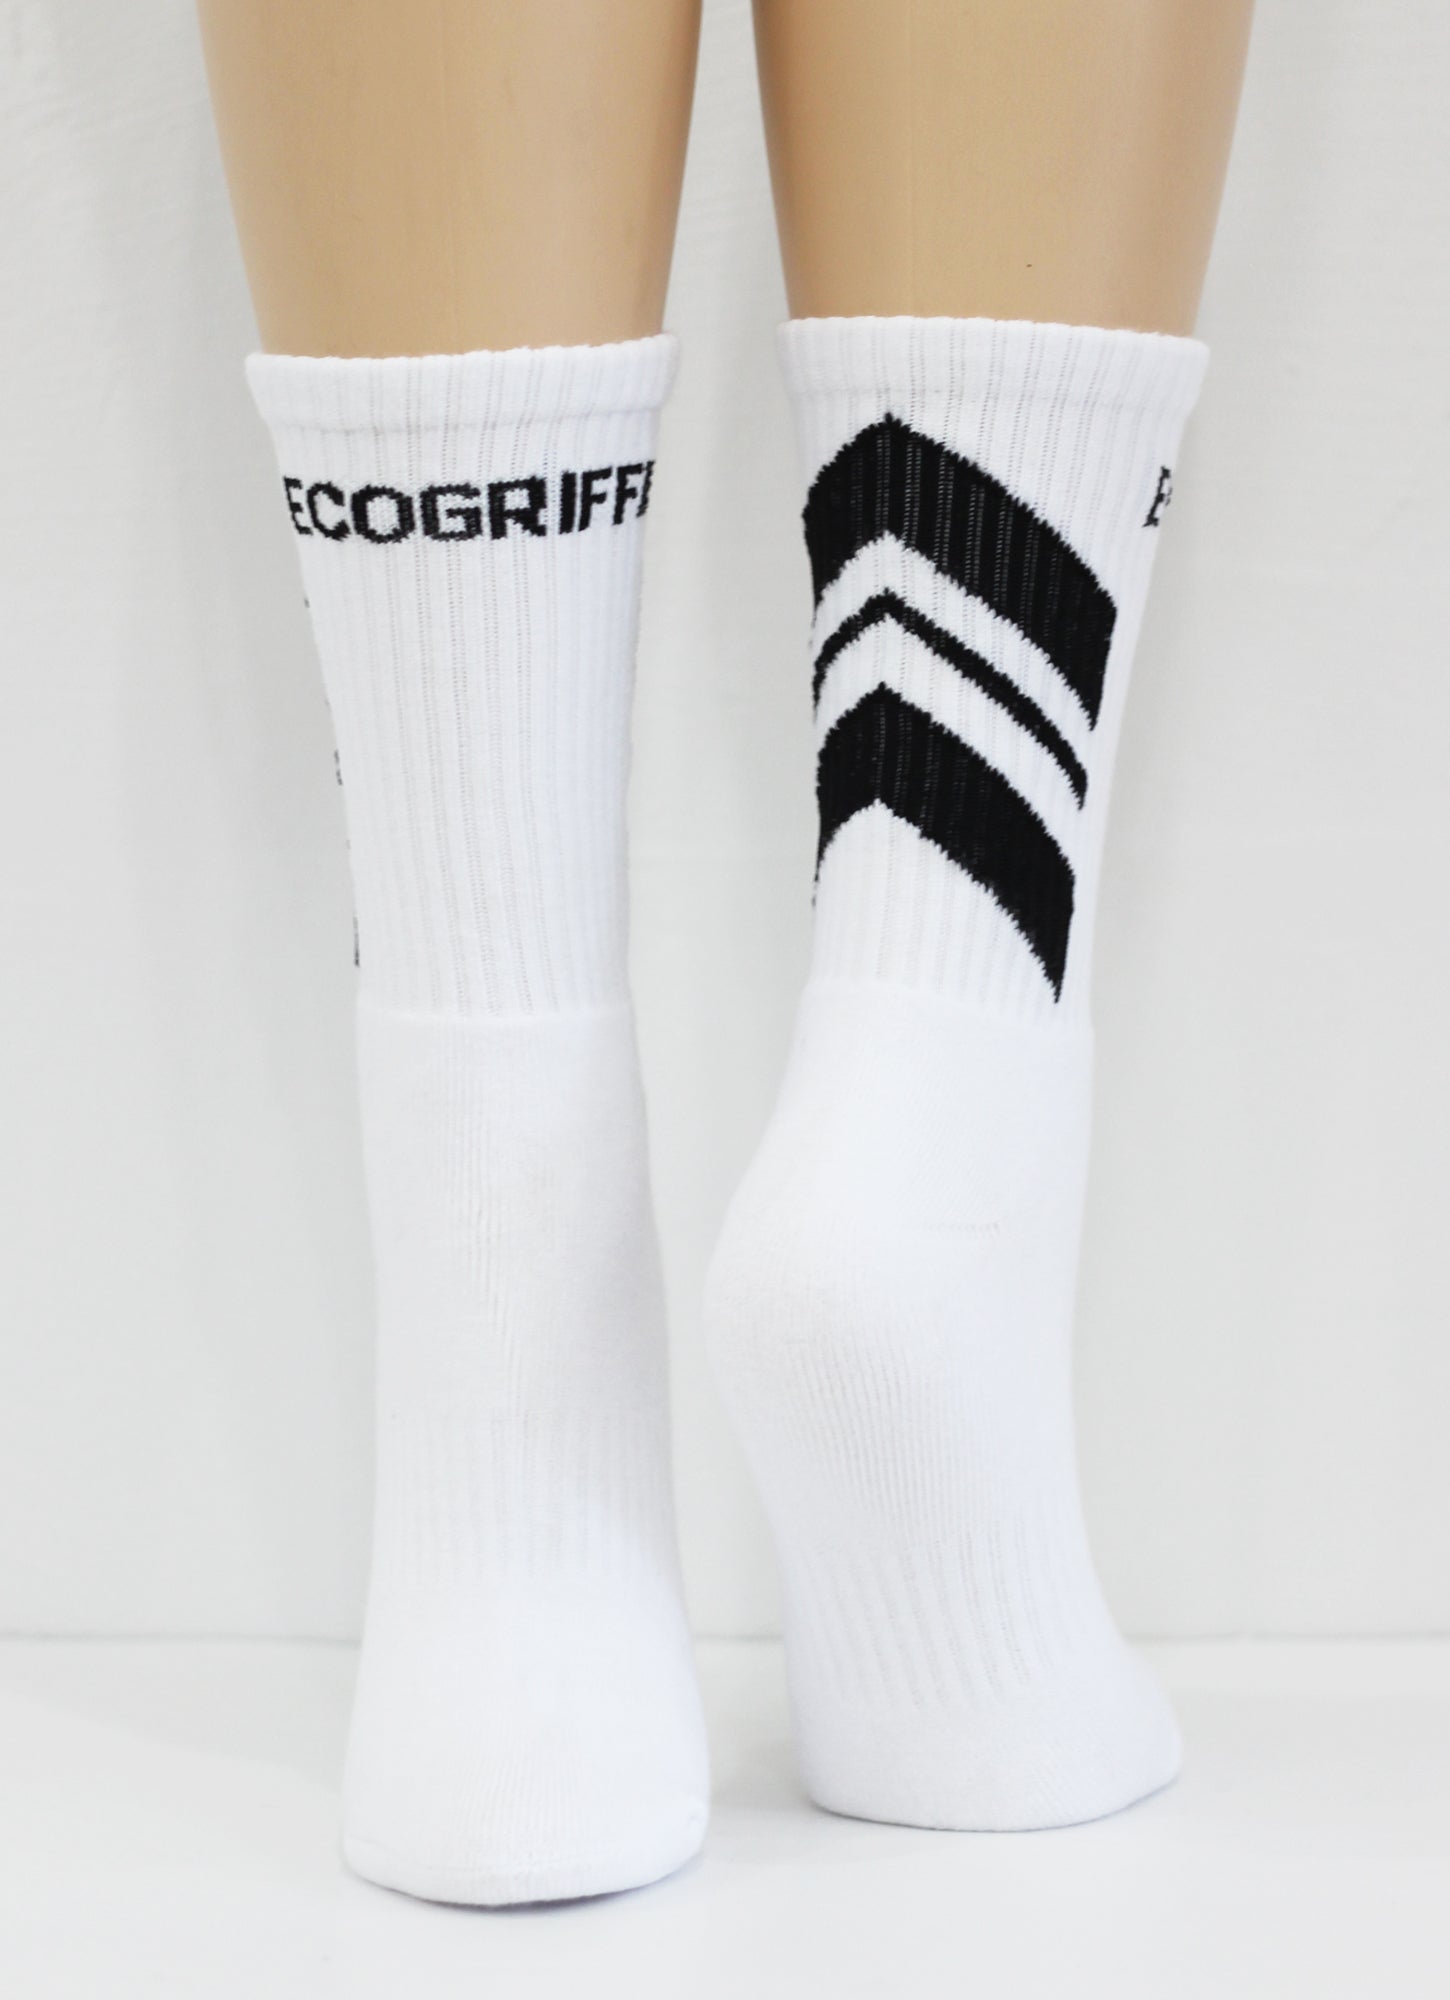 ecogriffe-chausette-azimut-blanc-logo noir-01 copie